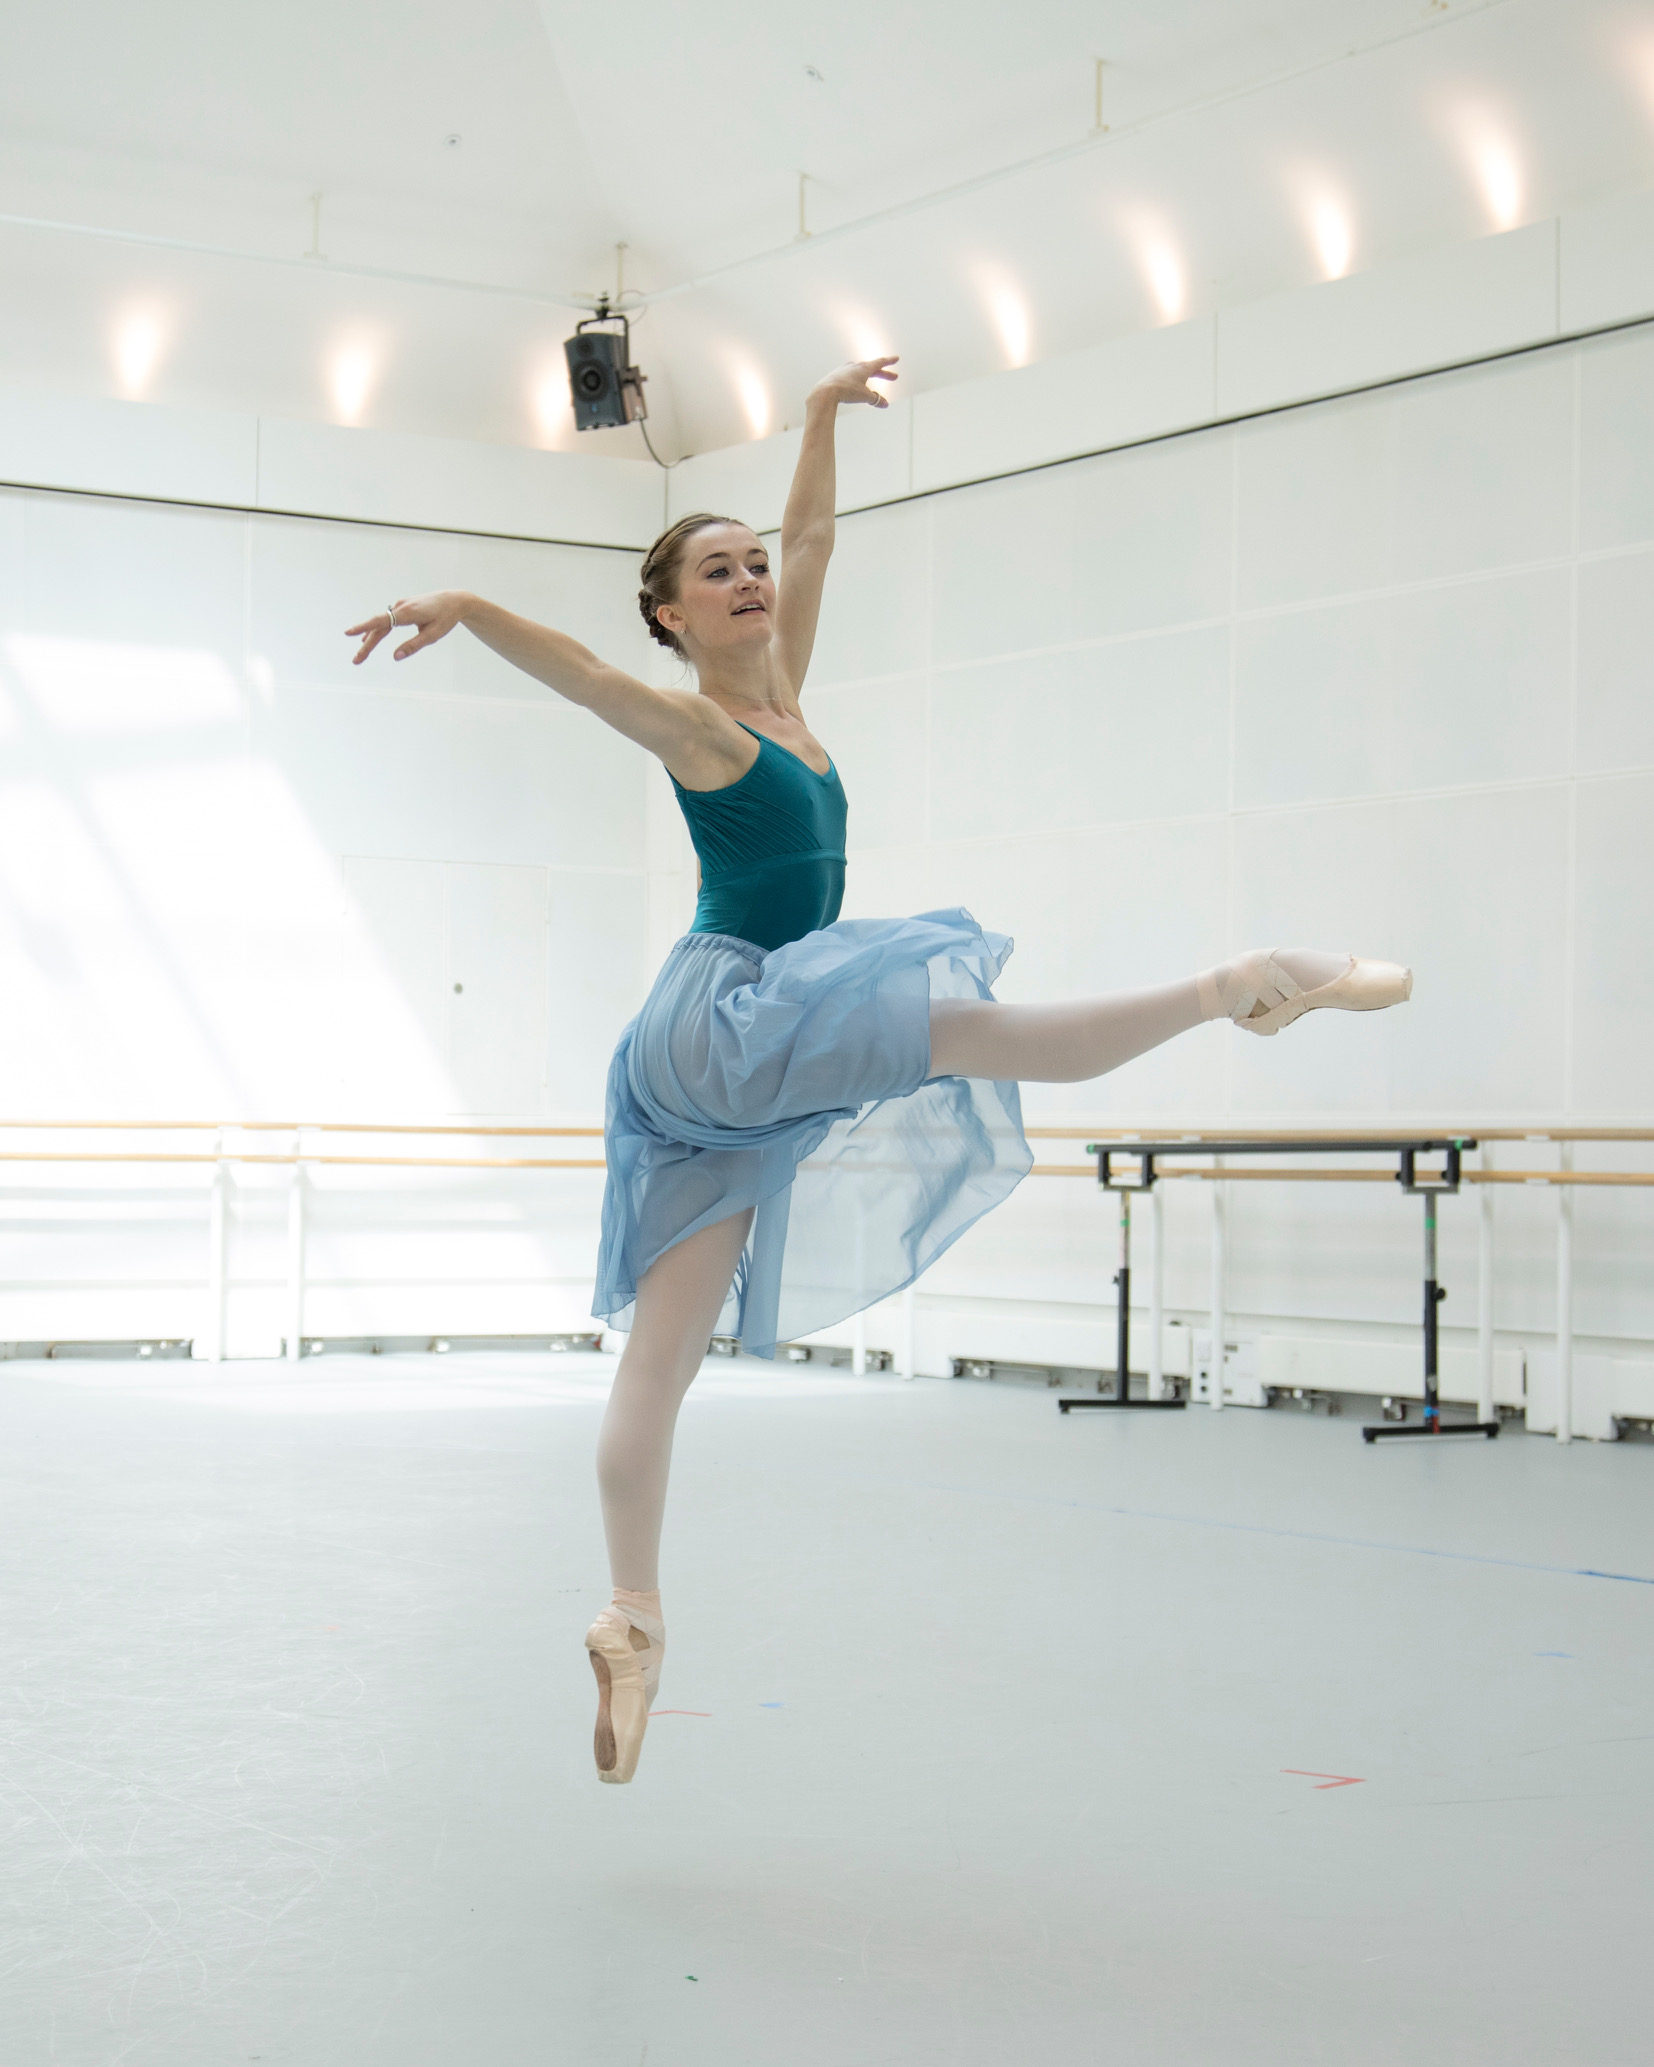 Royal Ballet dancer Anna Rose O'Sullivan in rehearsal. Photo by Andrej Uspenki